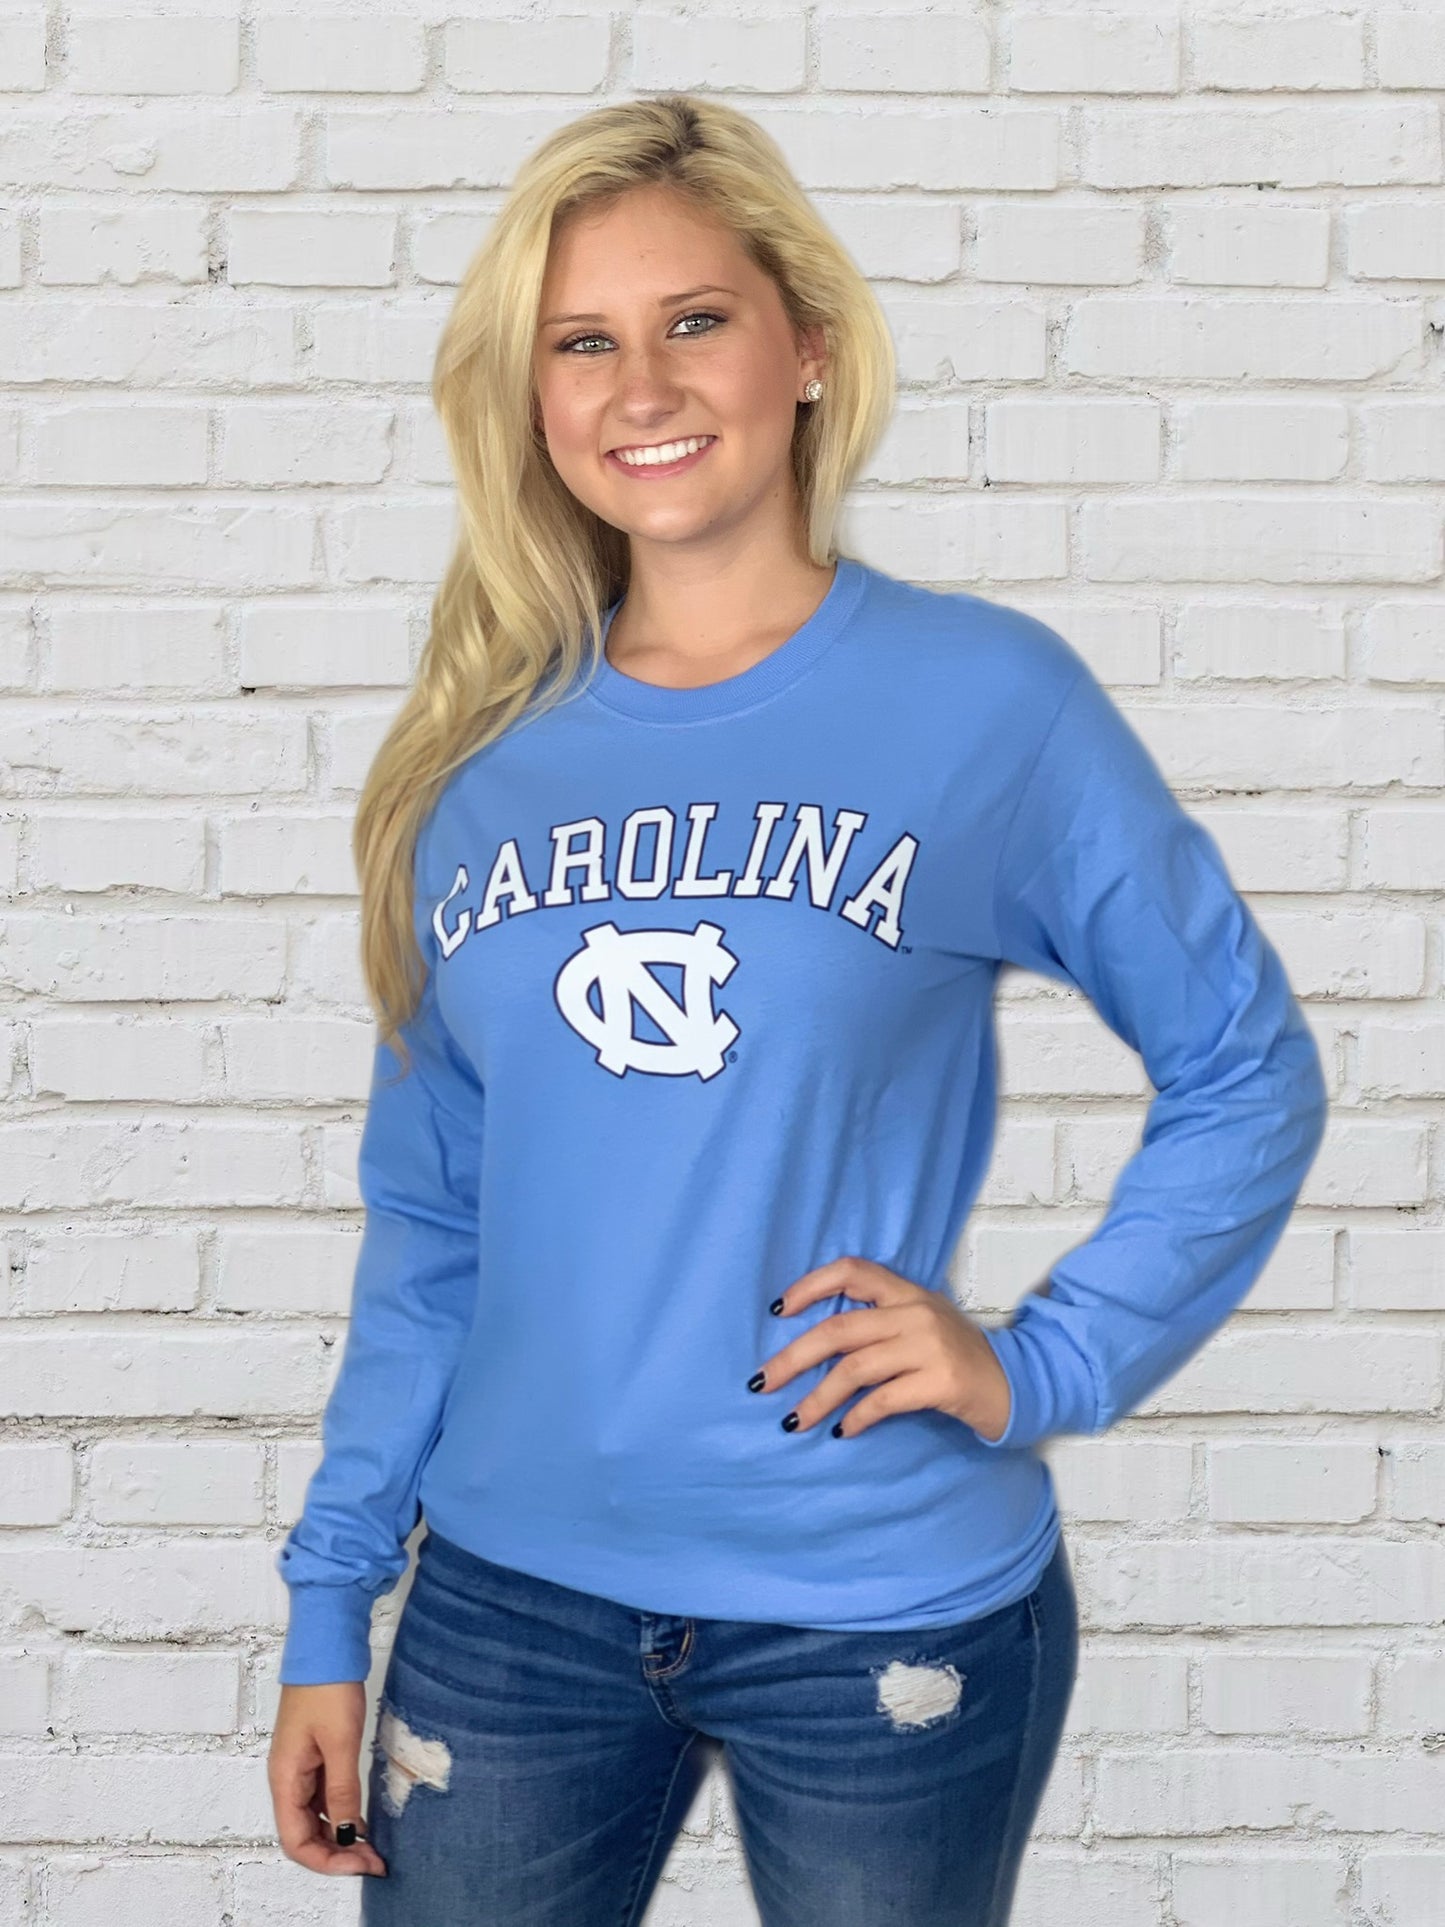 Carolina Blue Basic UNC Long Sleeve T-Shirt by Champion